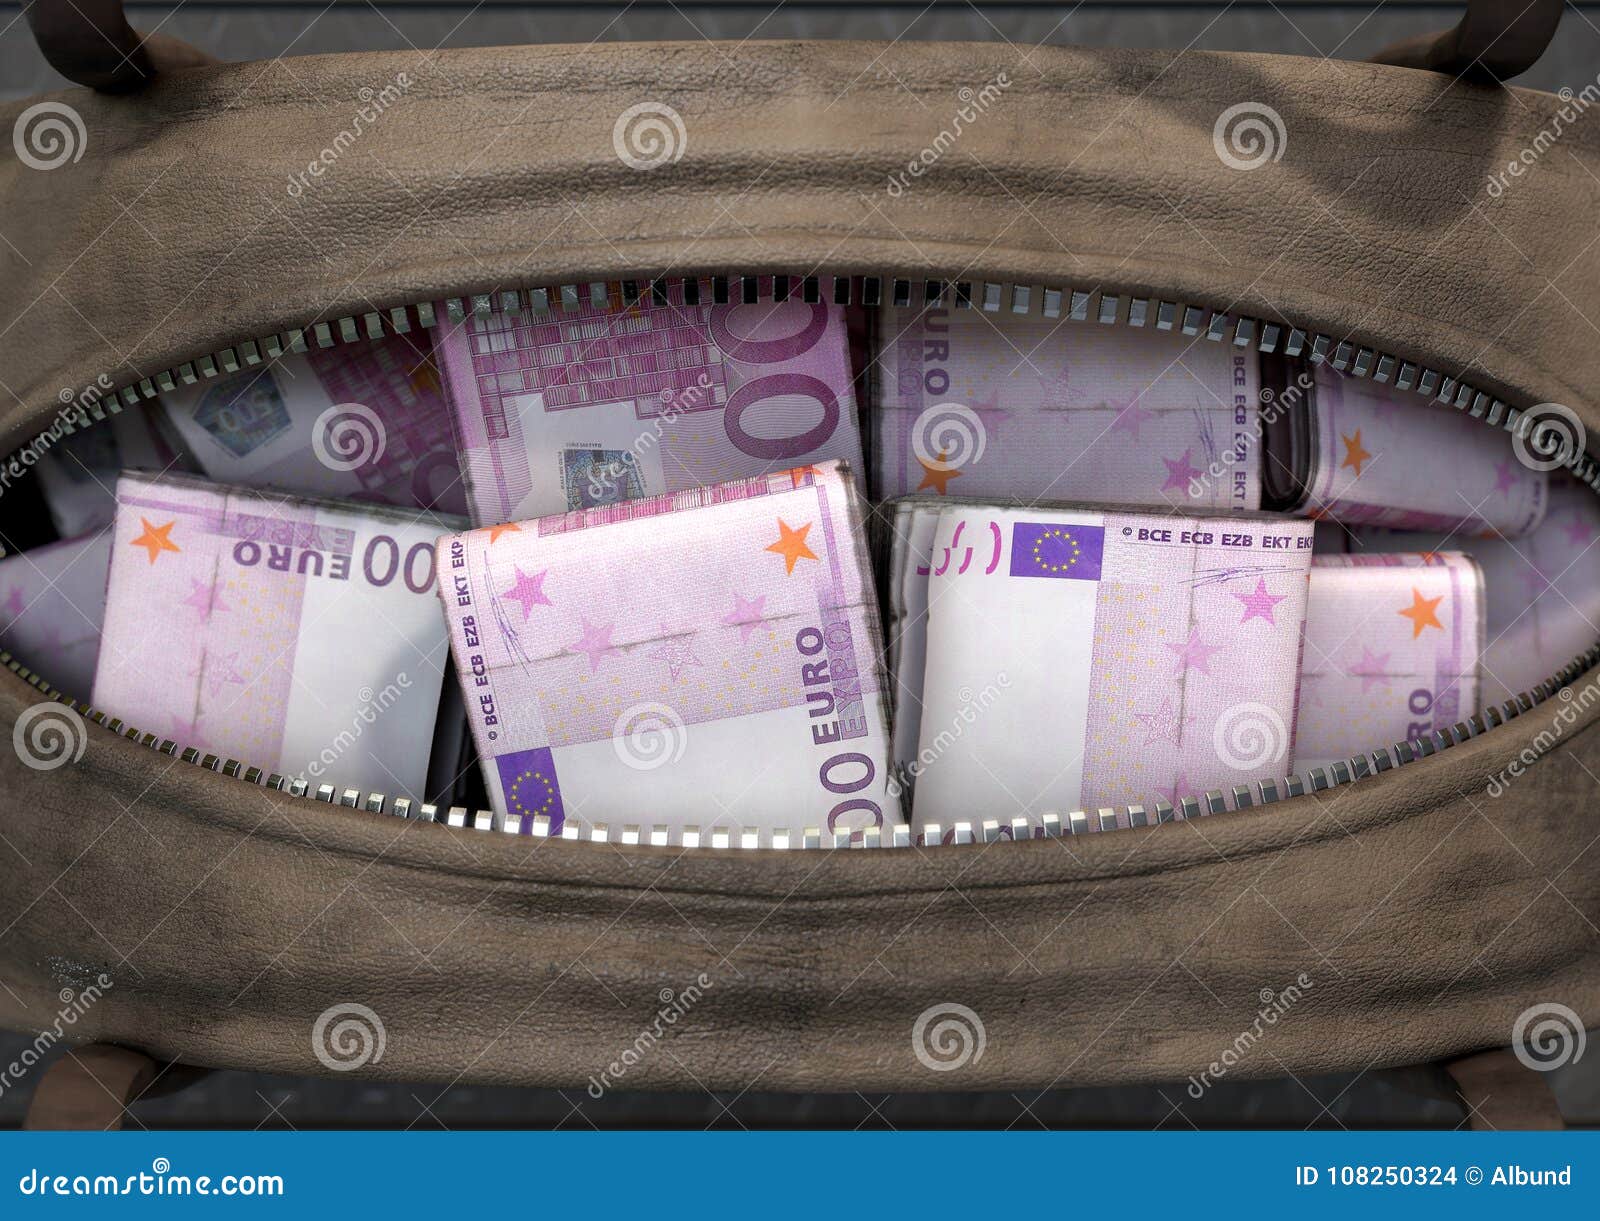 illicit cash in a brown duffel bag